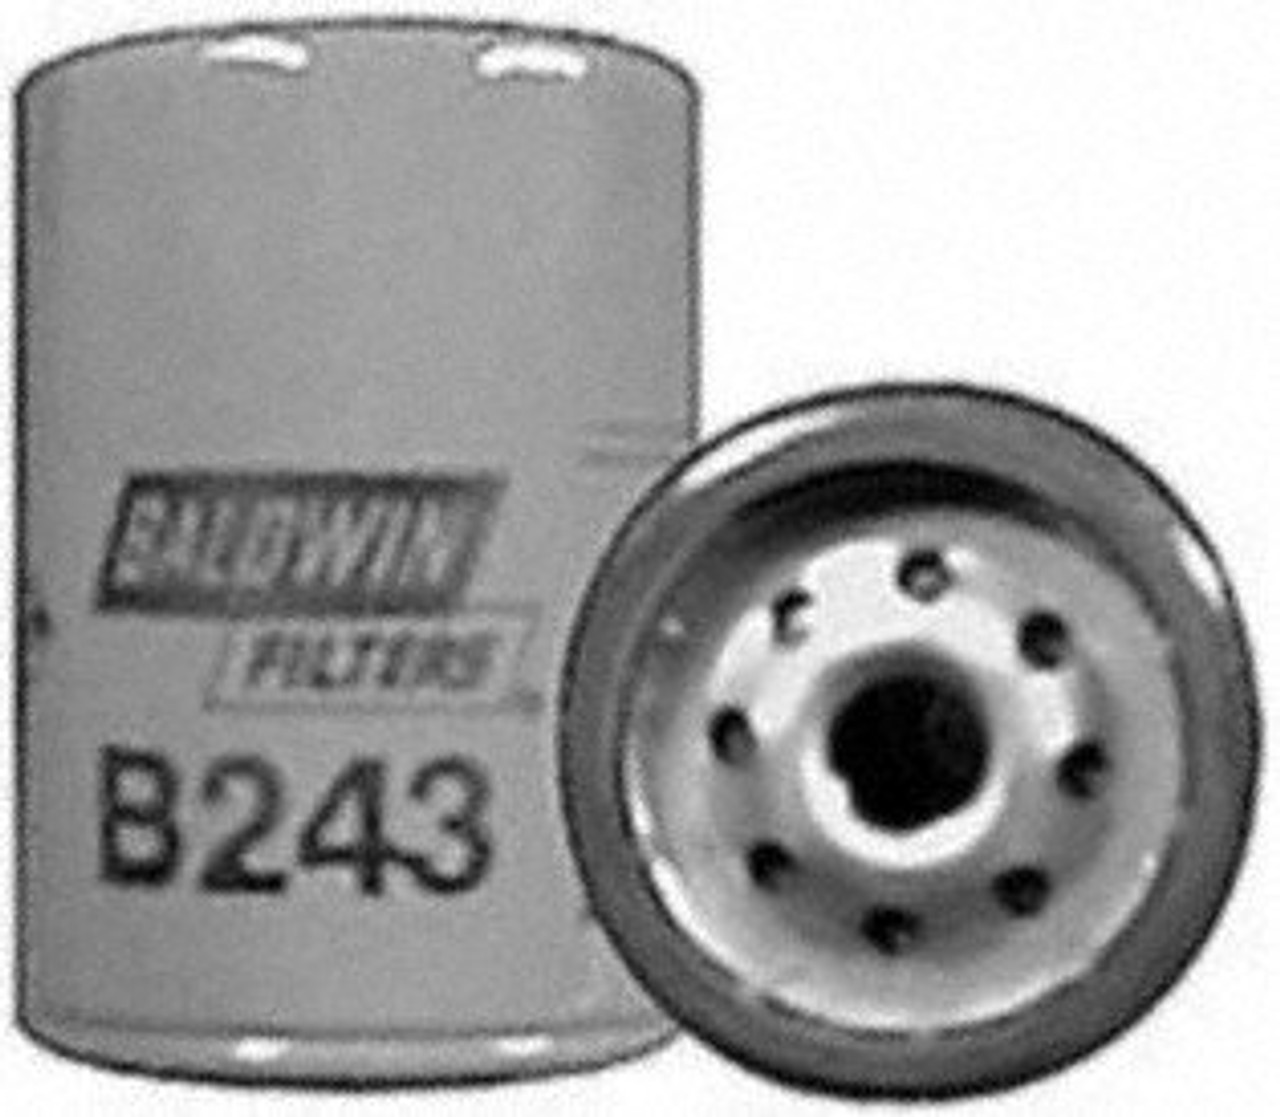 Baldwin B243 Lube Spin-on